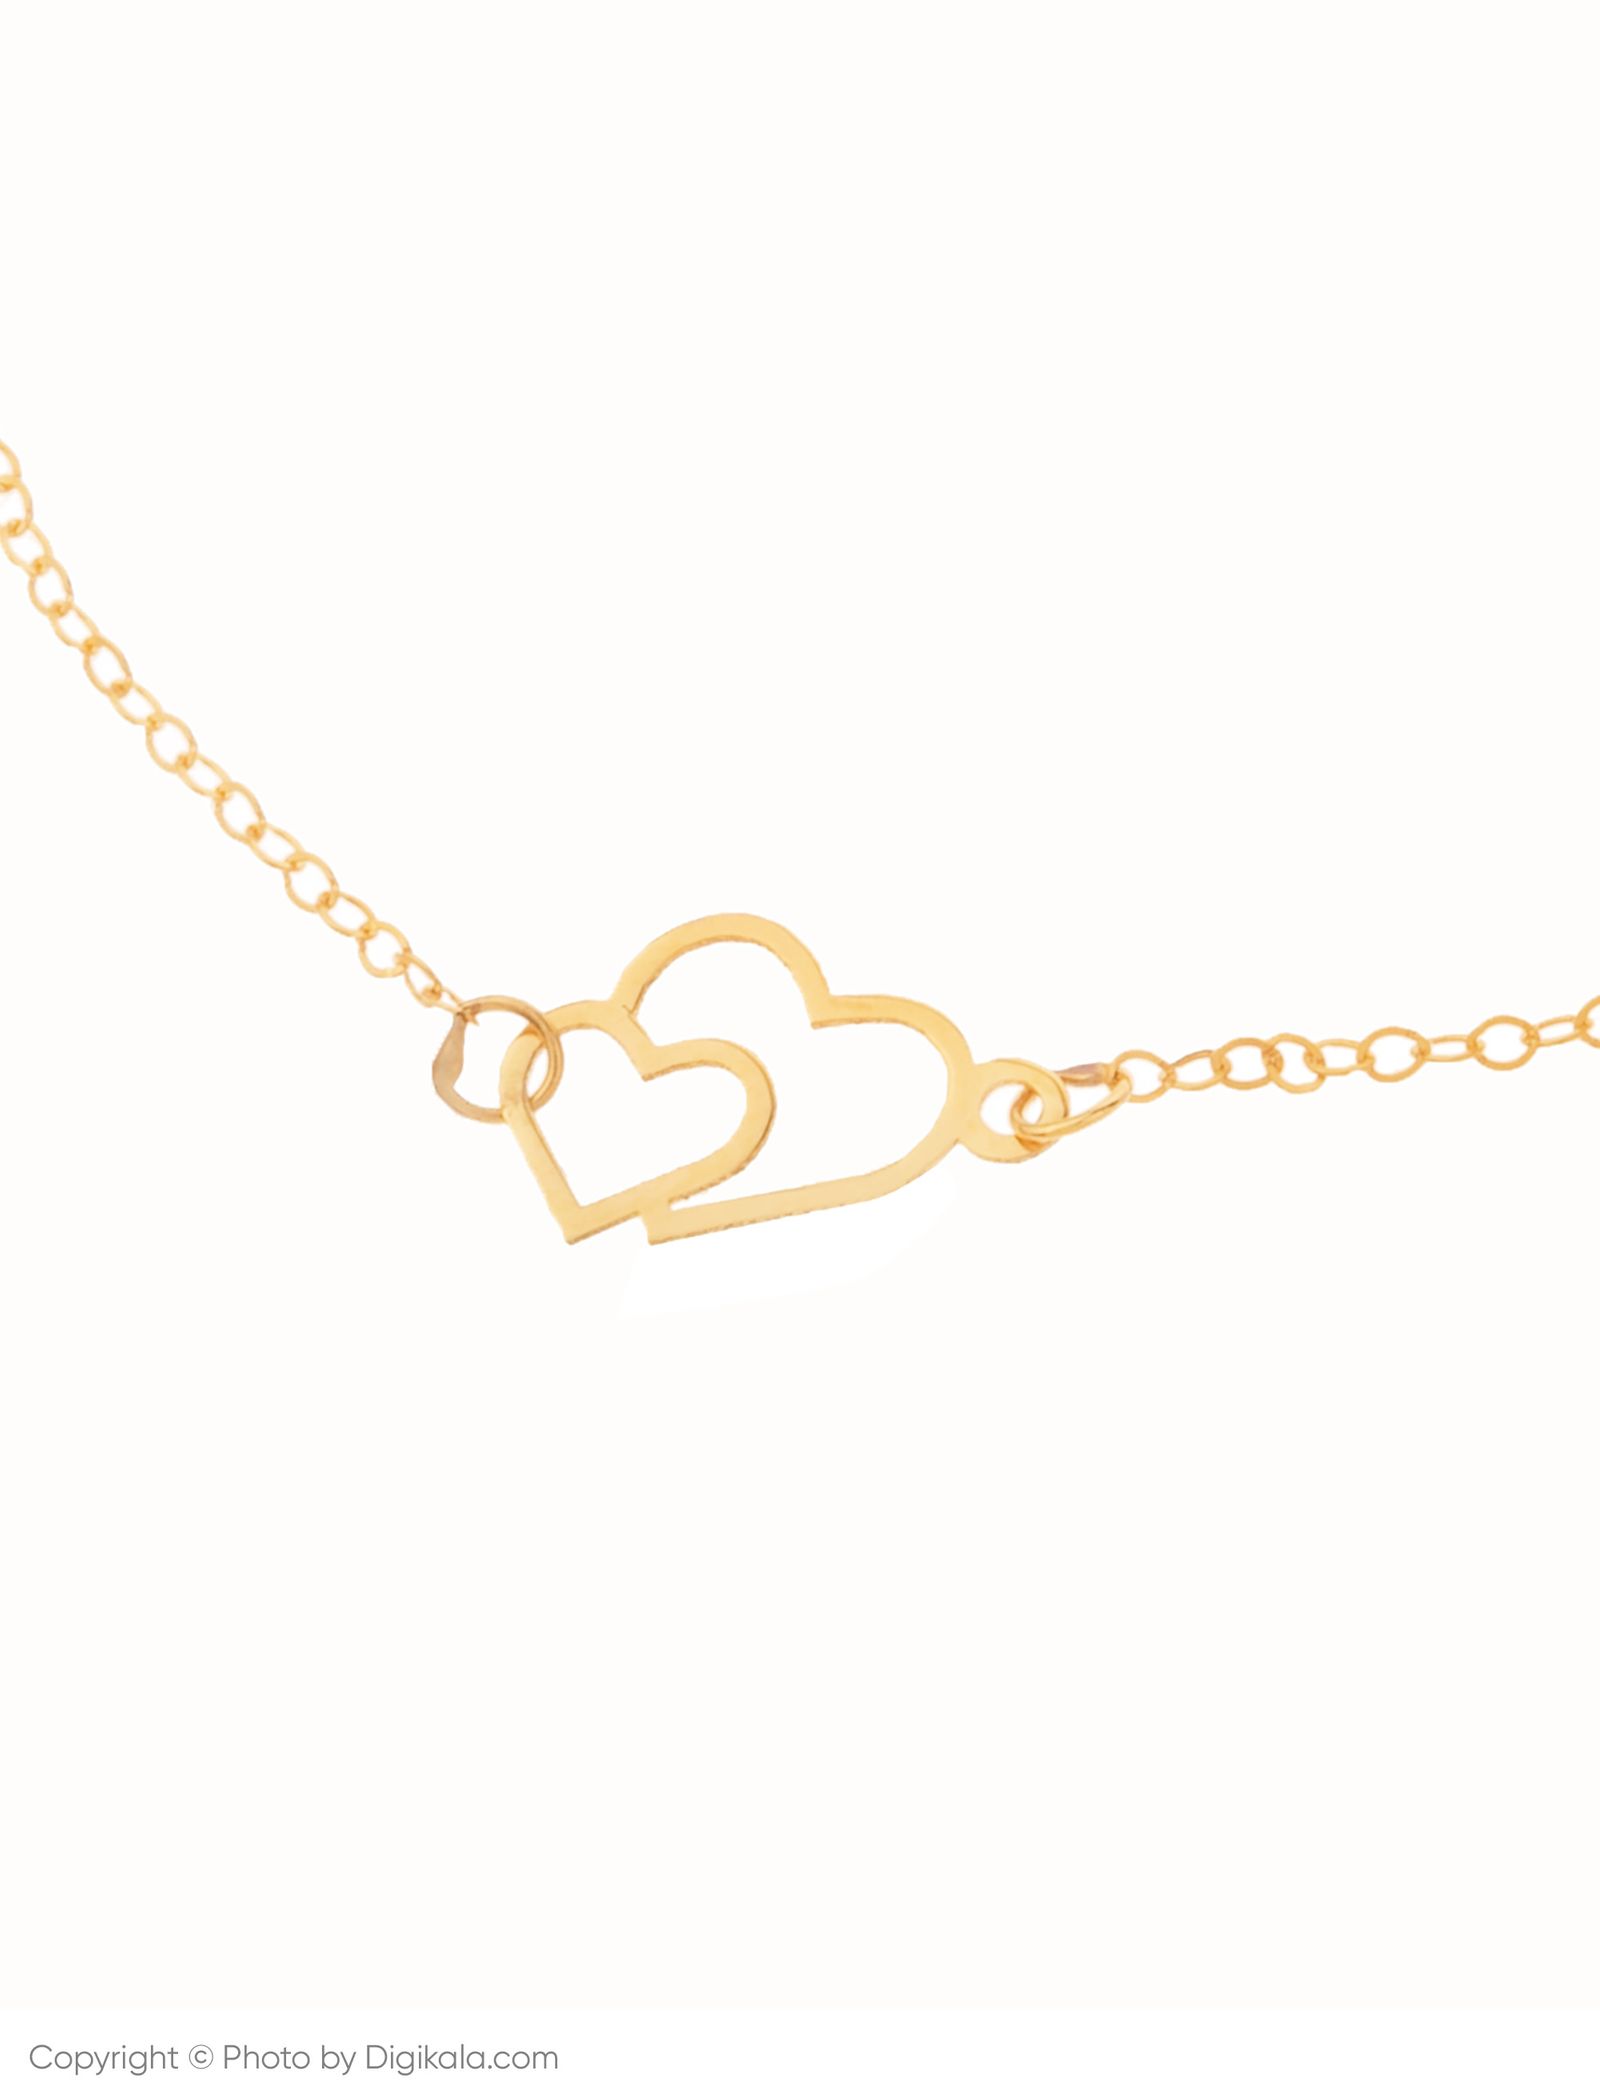 دستبند طلا 18 عیار زنانه مایا ماهک مدل MB0957 طرح دو قلب -  - 3